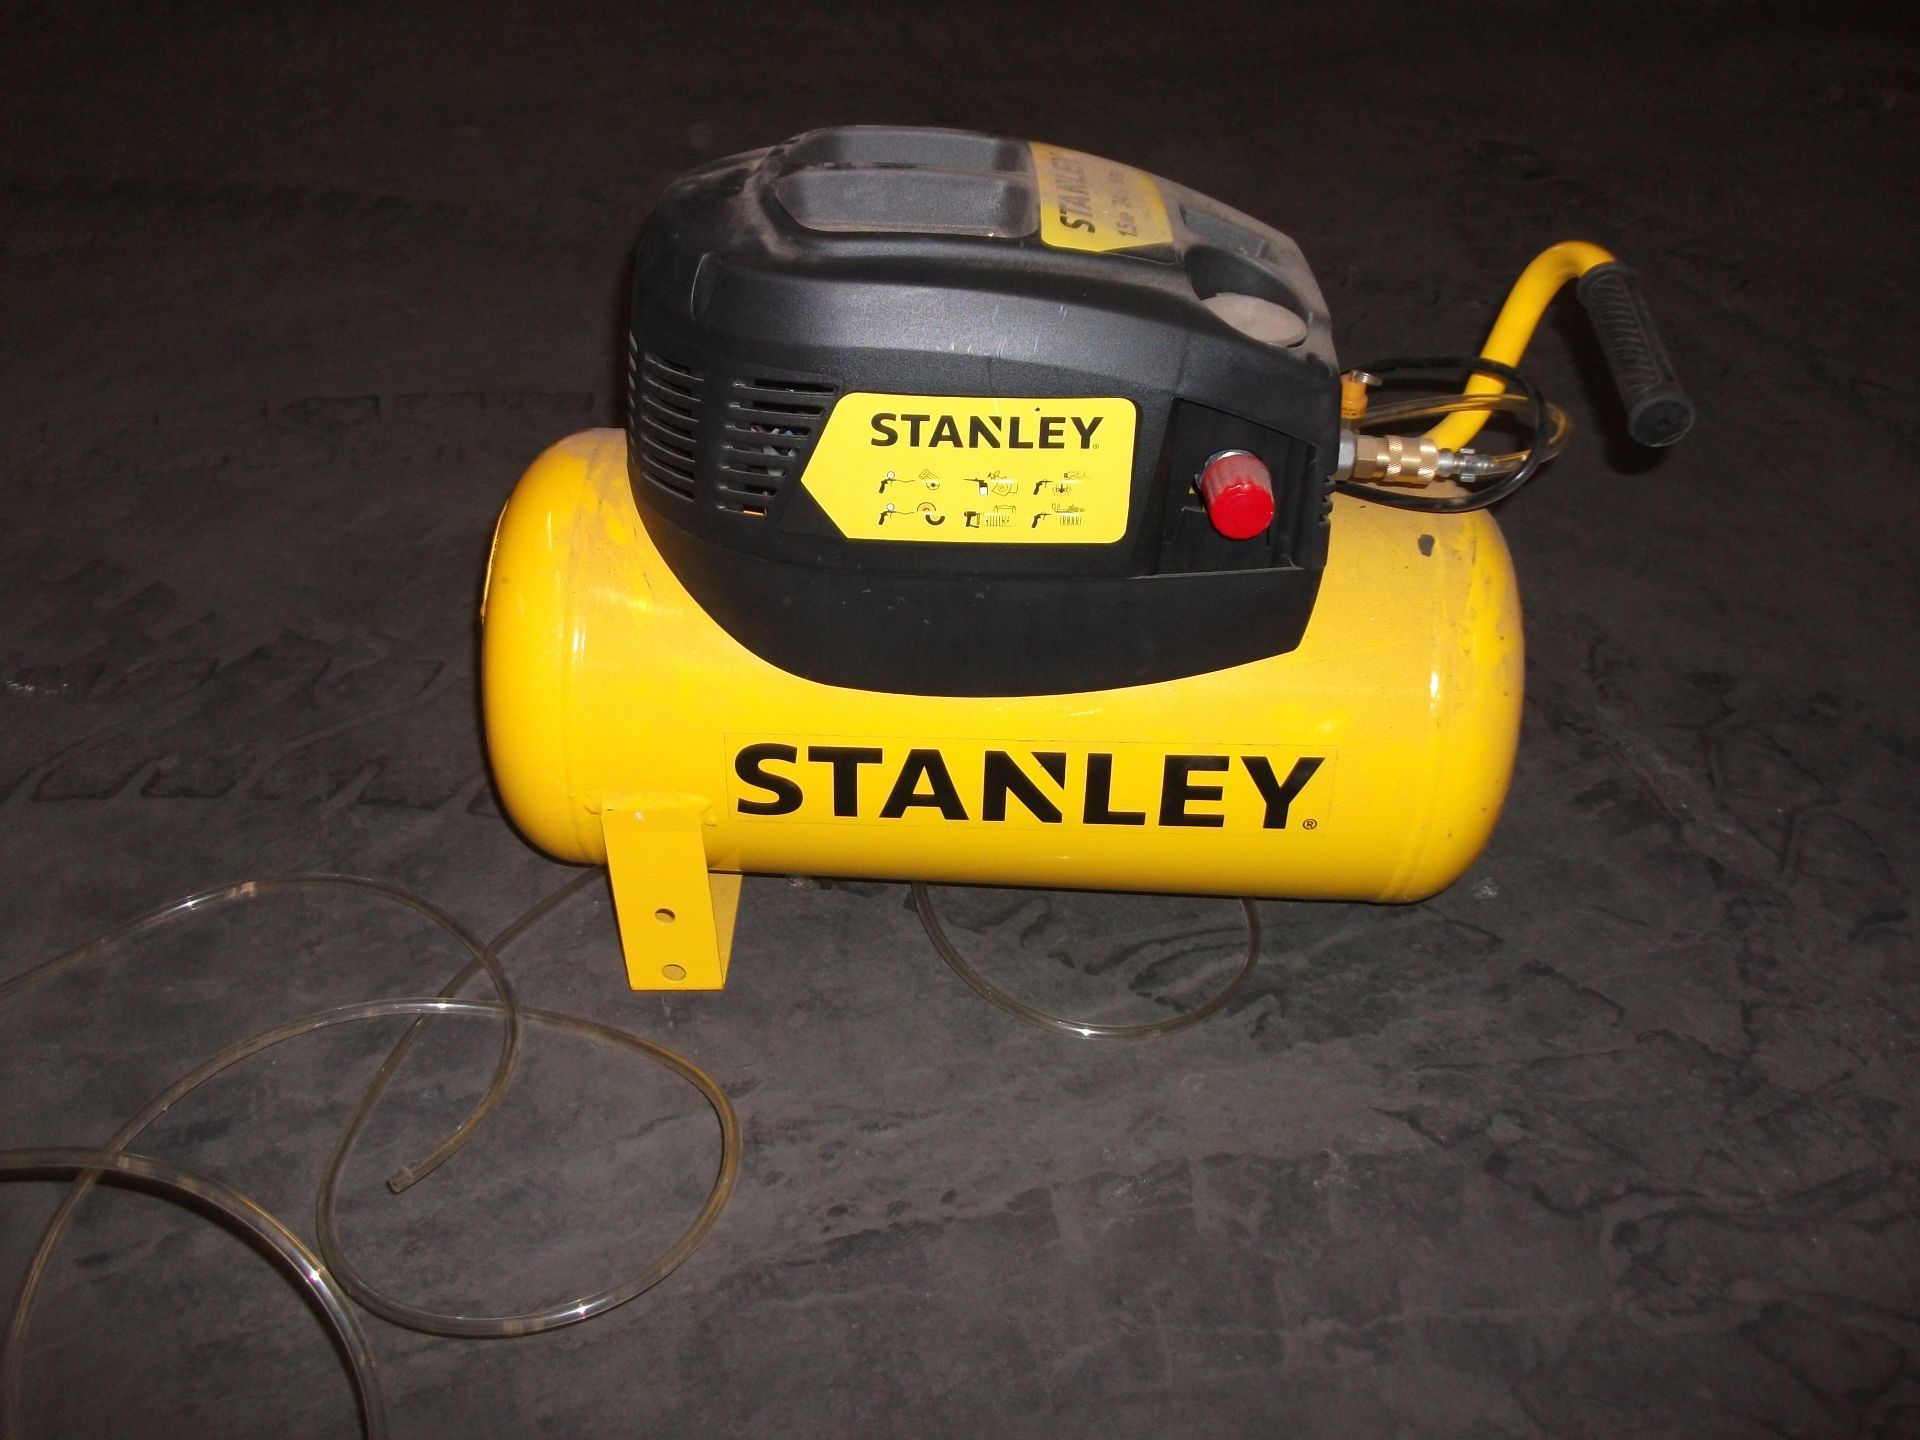 Stanley D200/8/24 1.5 HP portable air compressor, 180l/min, 240V, 8Bar, 116PSI, 24L Tank, Serial